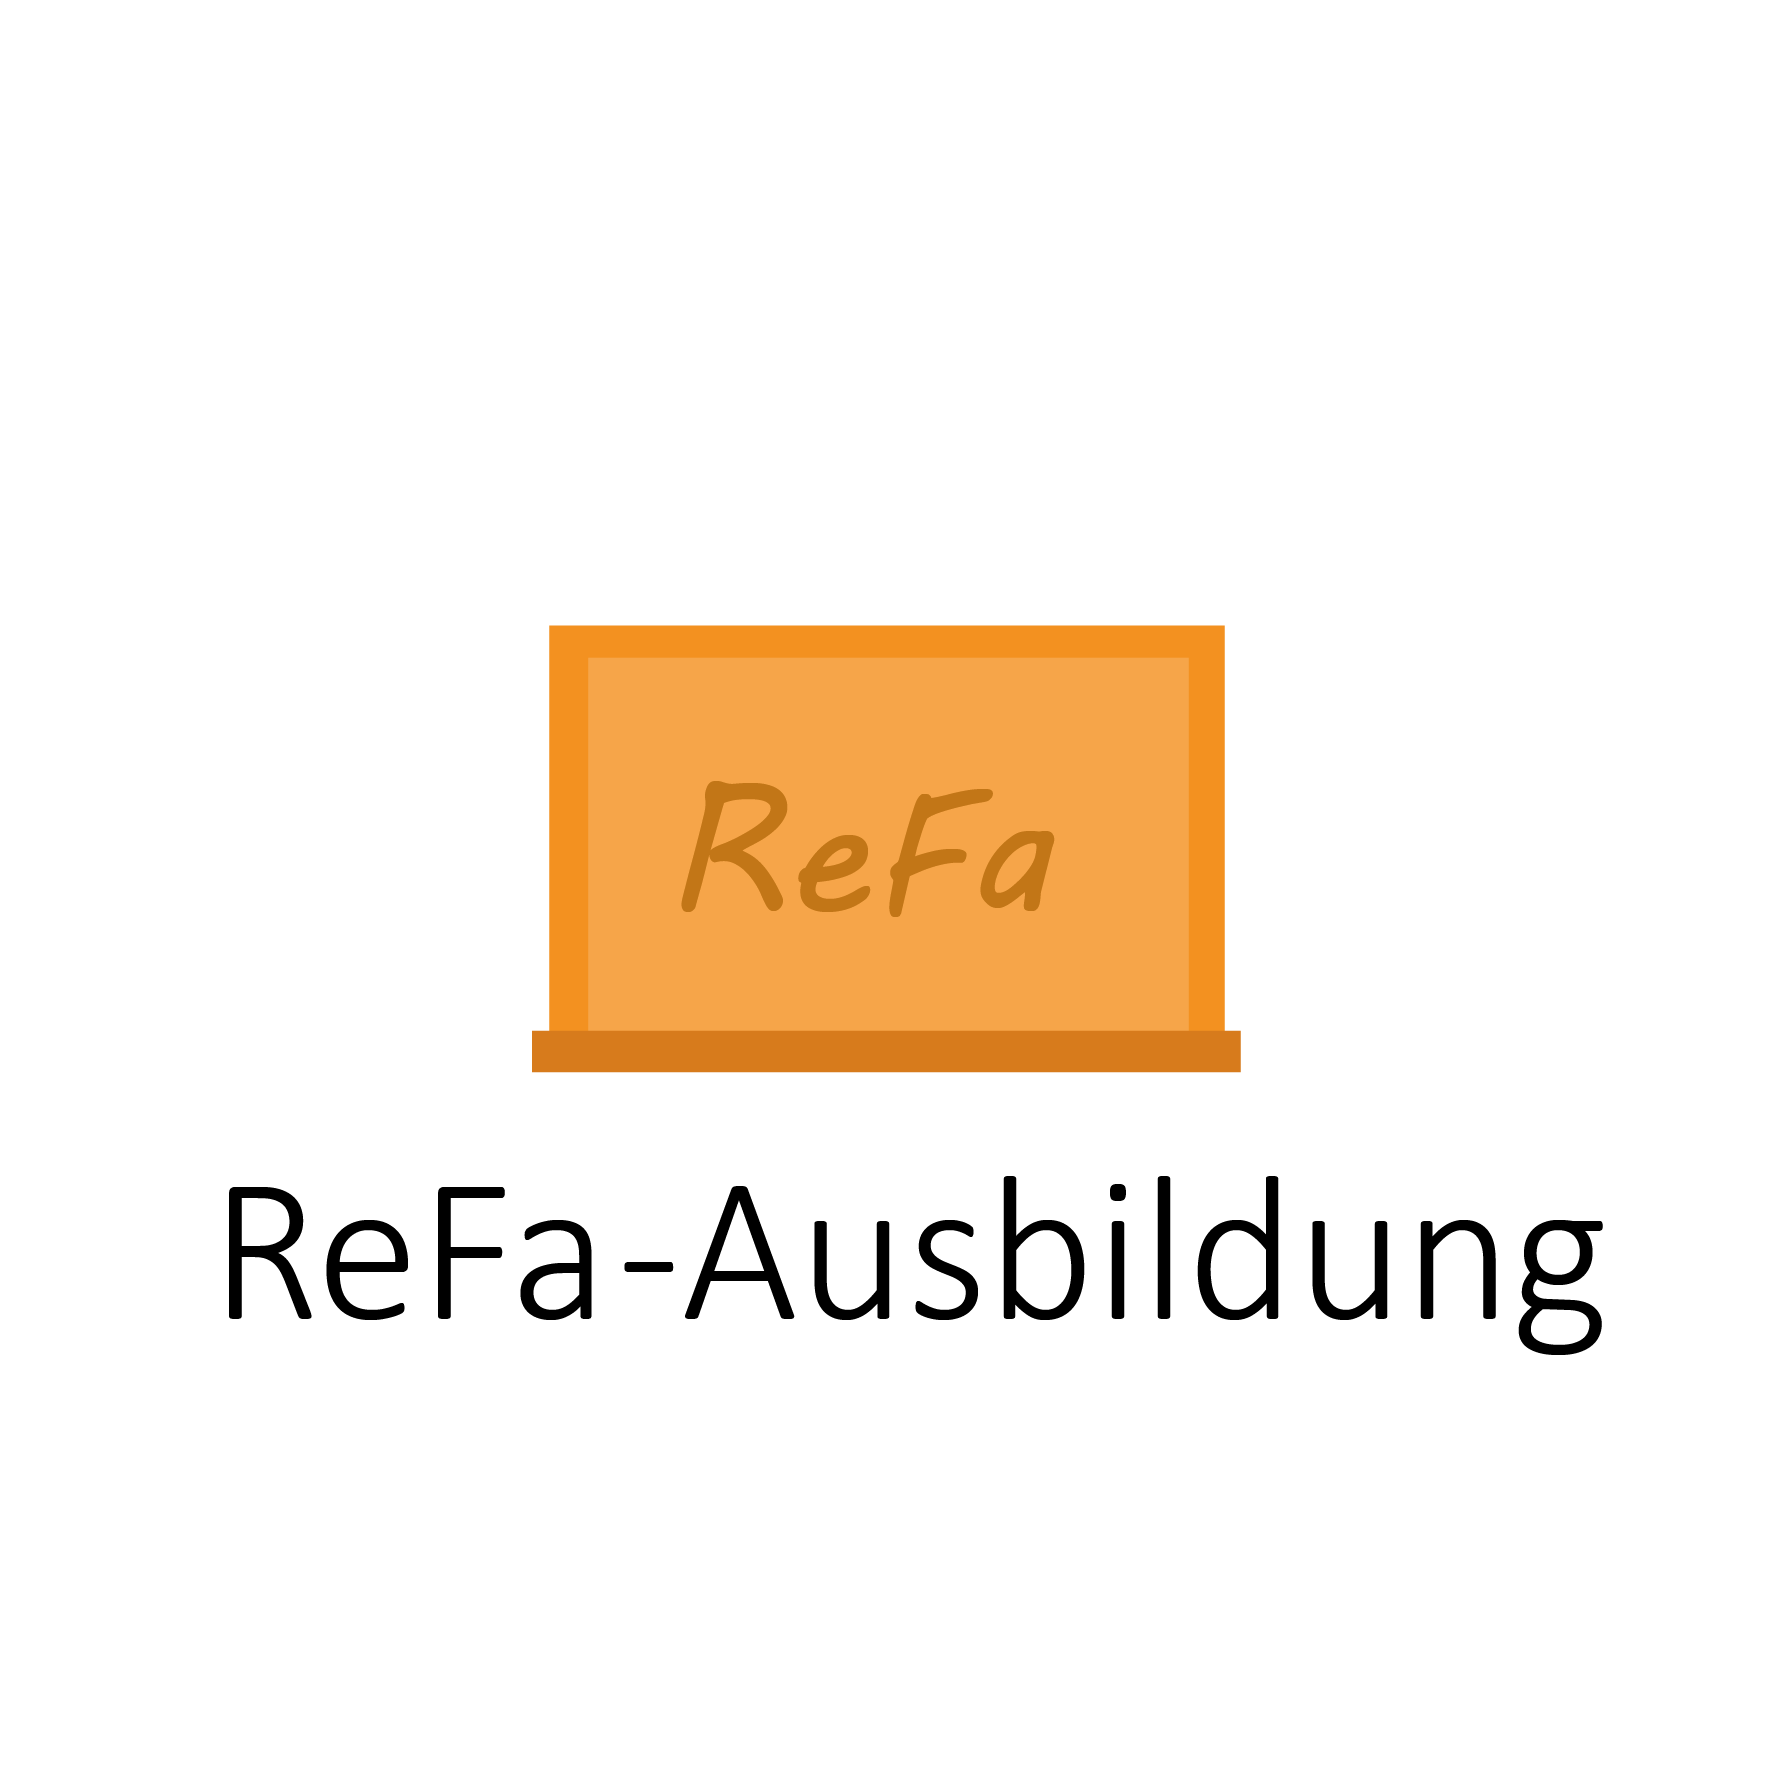 ReFa-Ausbildung